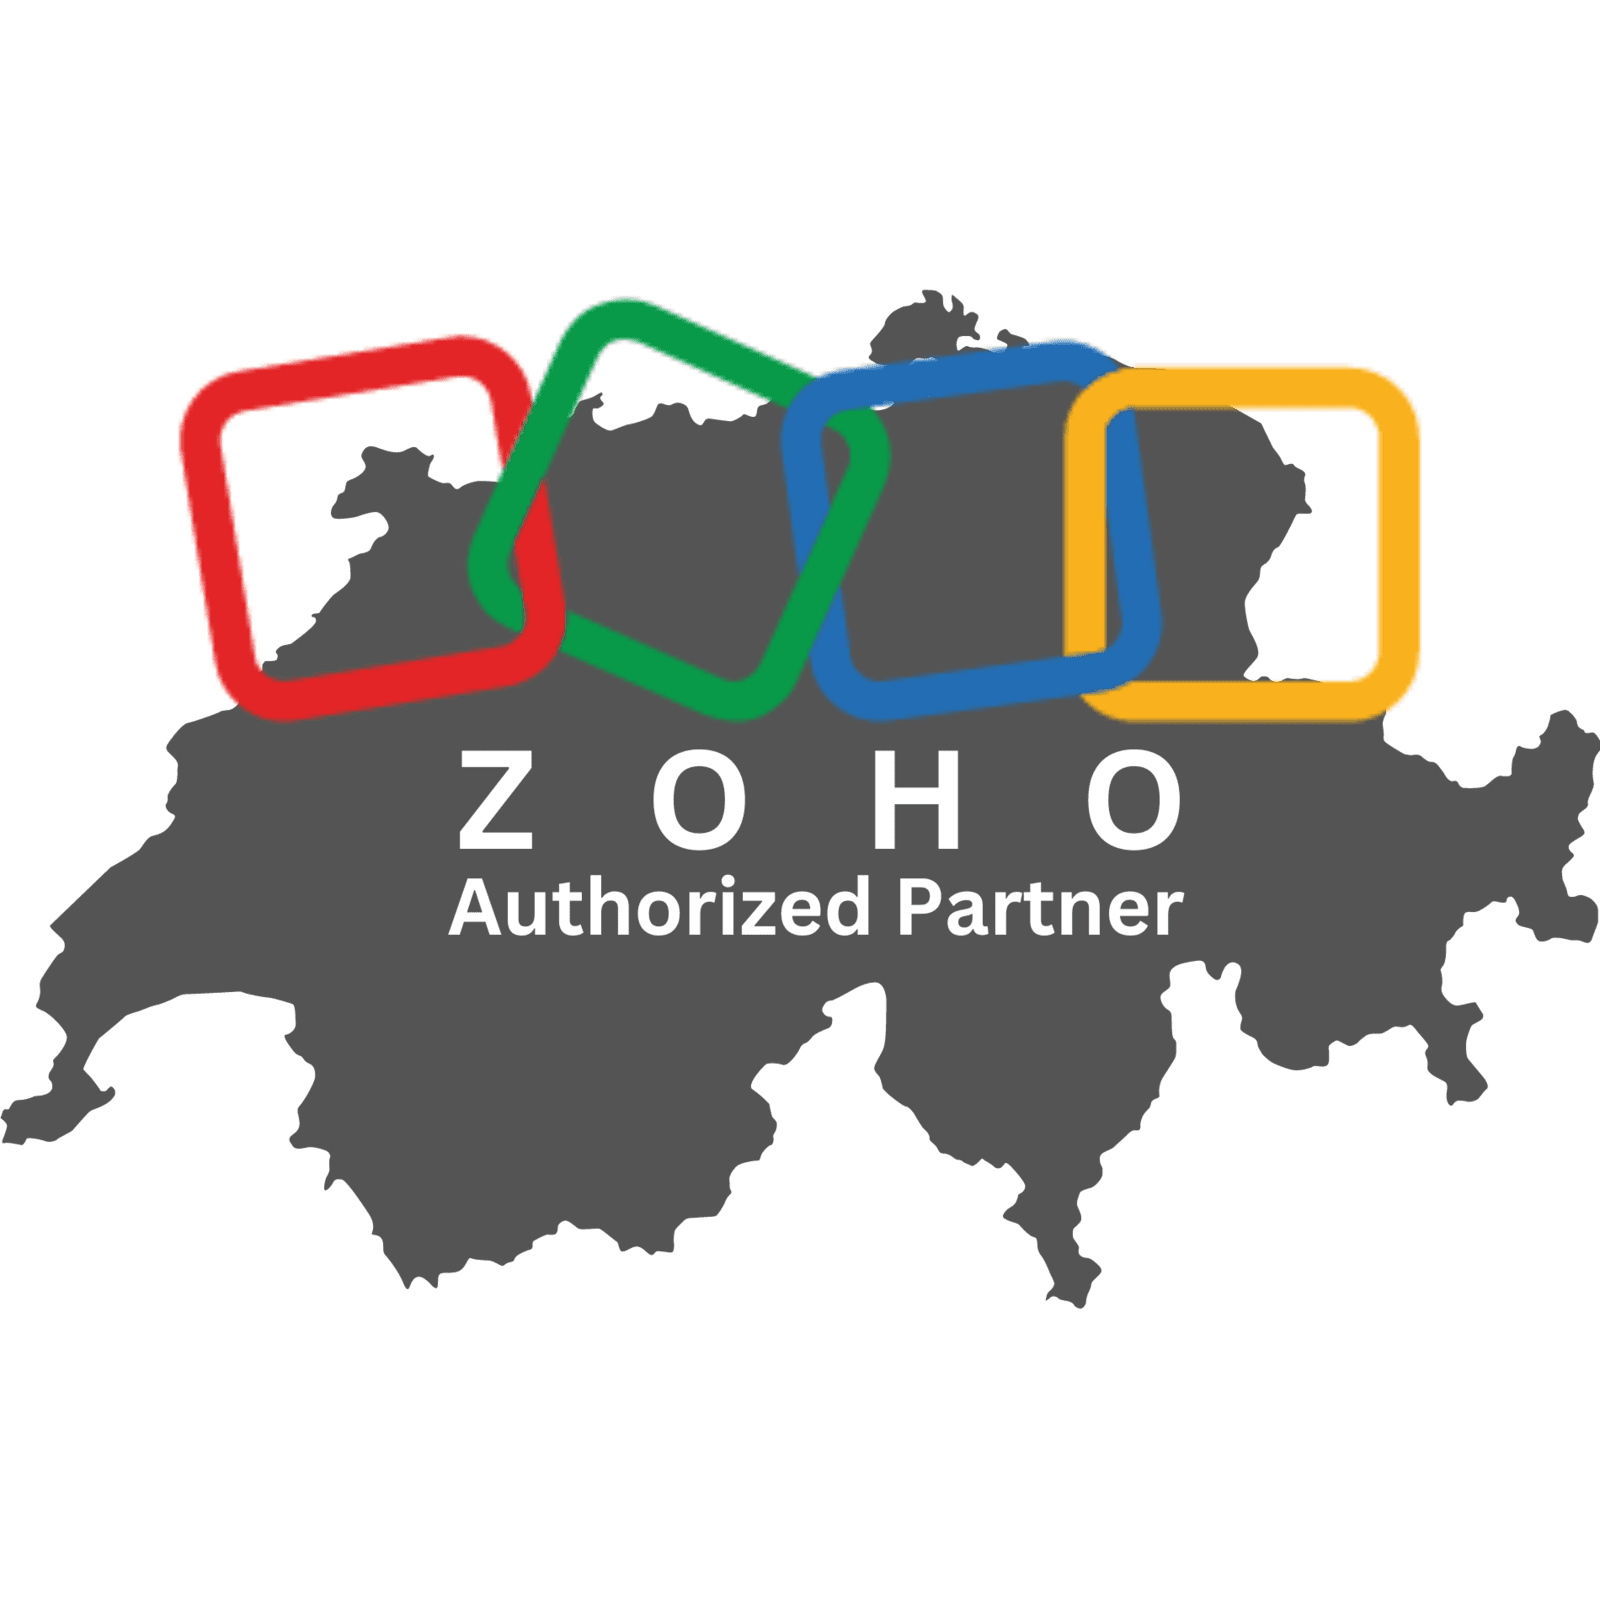 Autorisierter ZOHO Partner Schweiz Logo